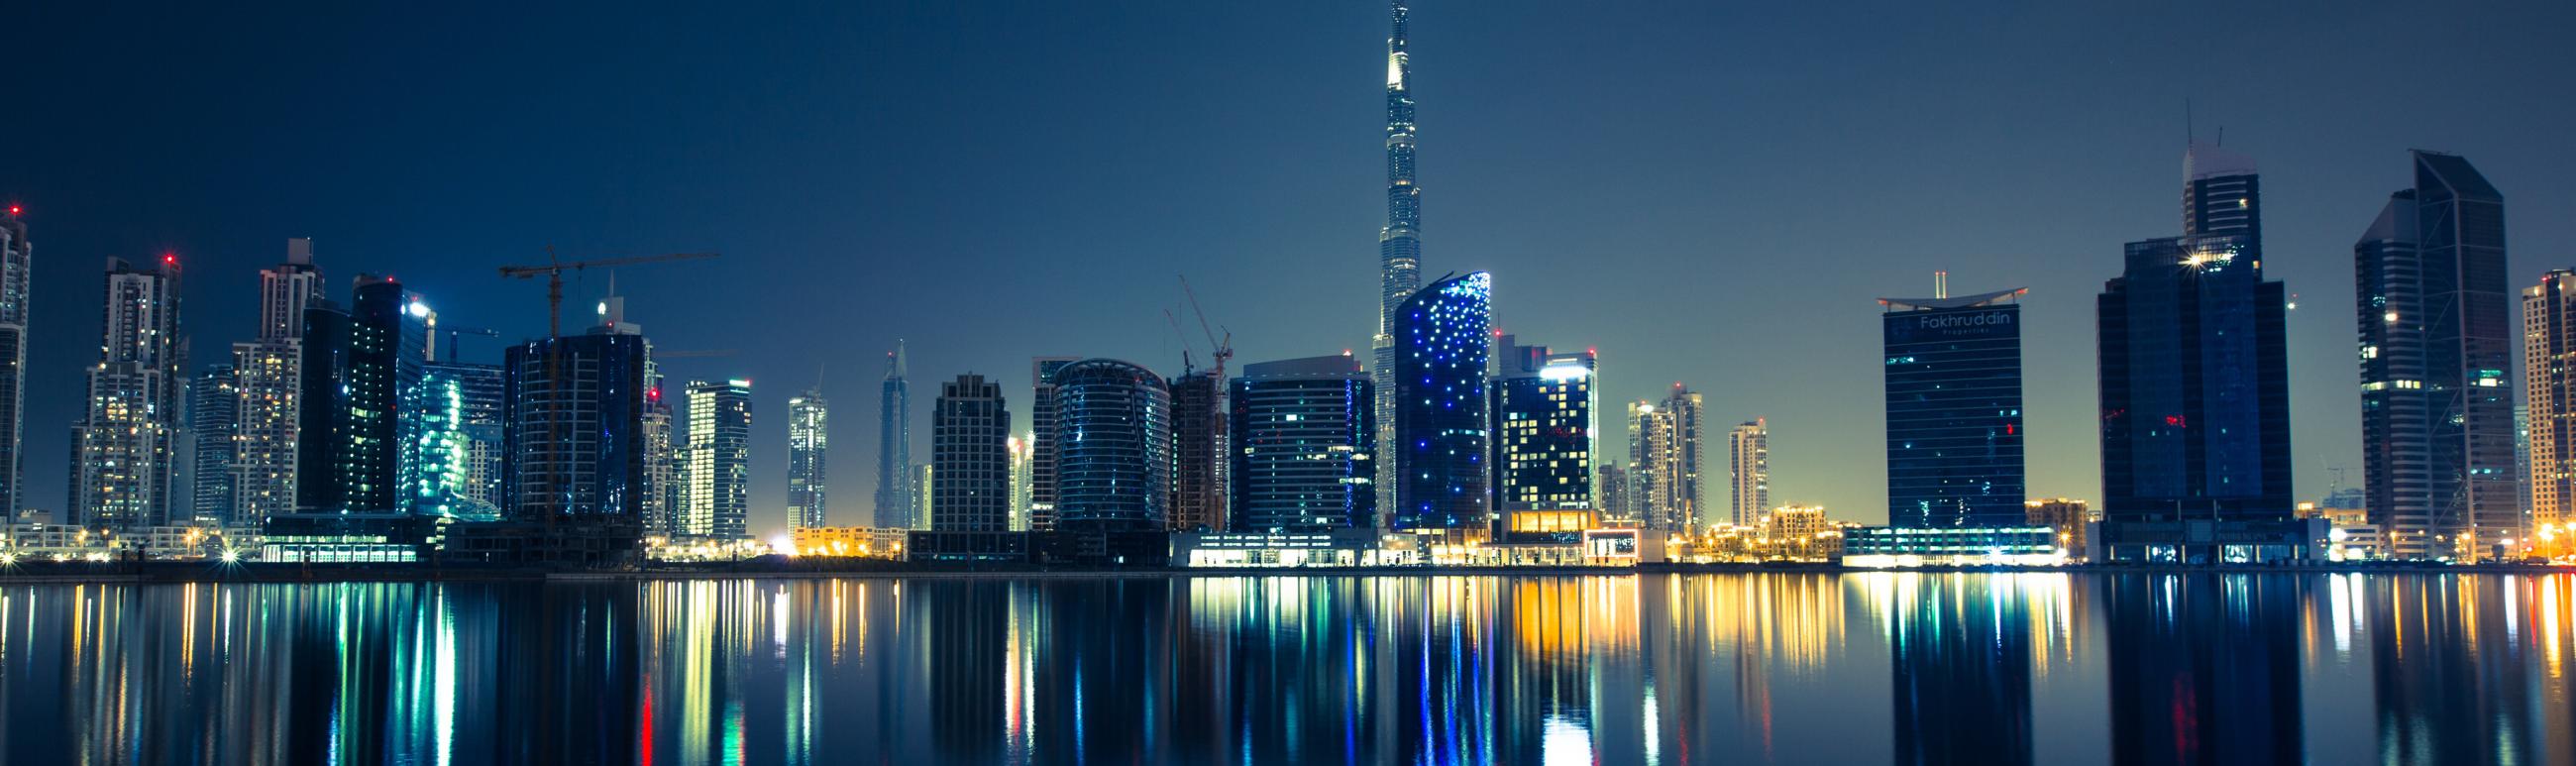 Dubai, skyscrapers